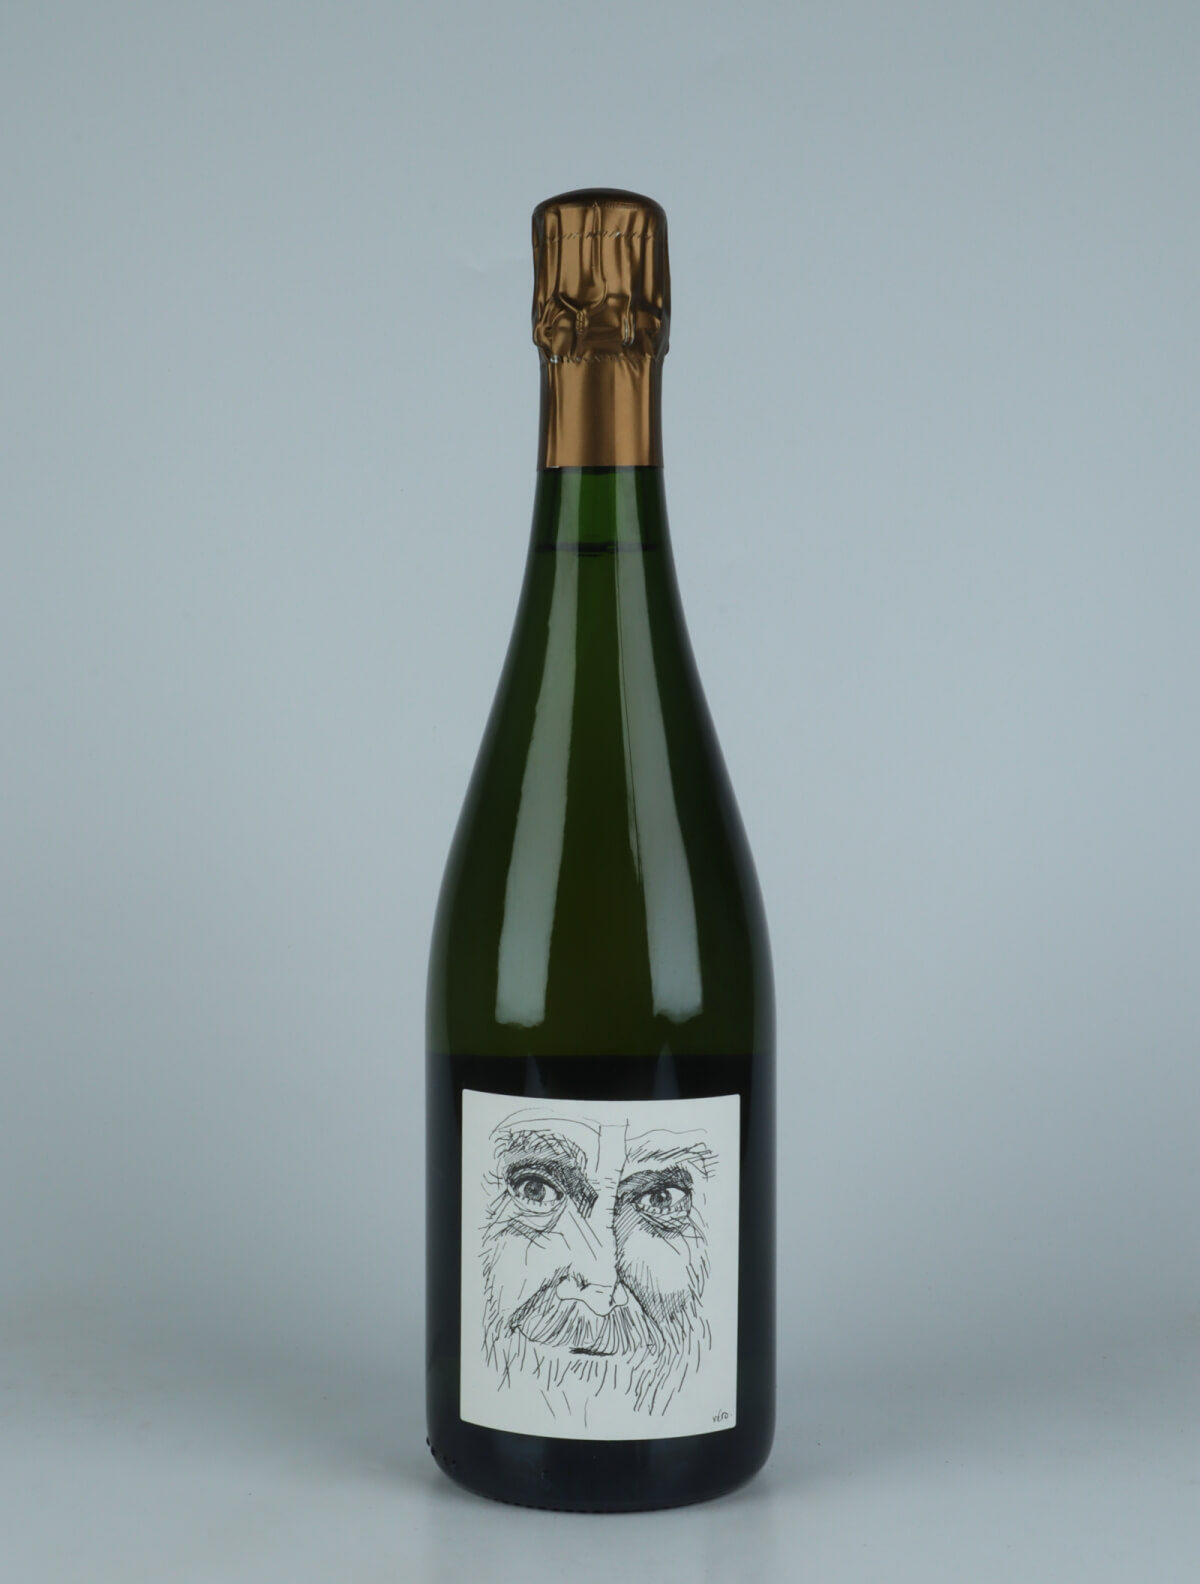 En flaske 2018 Heraclite - Pinot Meunier - Brut Nature Mousserende fra Stroebel, Champagne i Frankrig